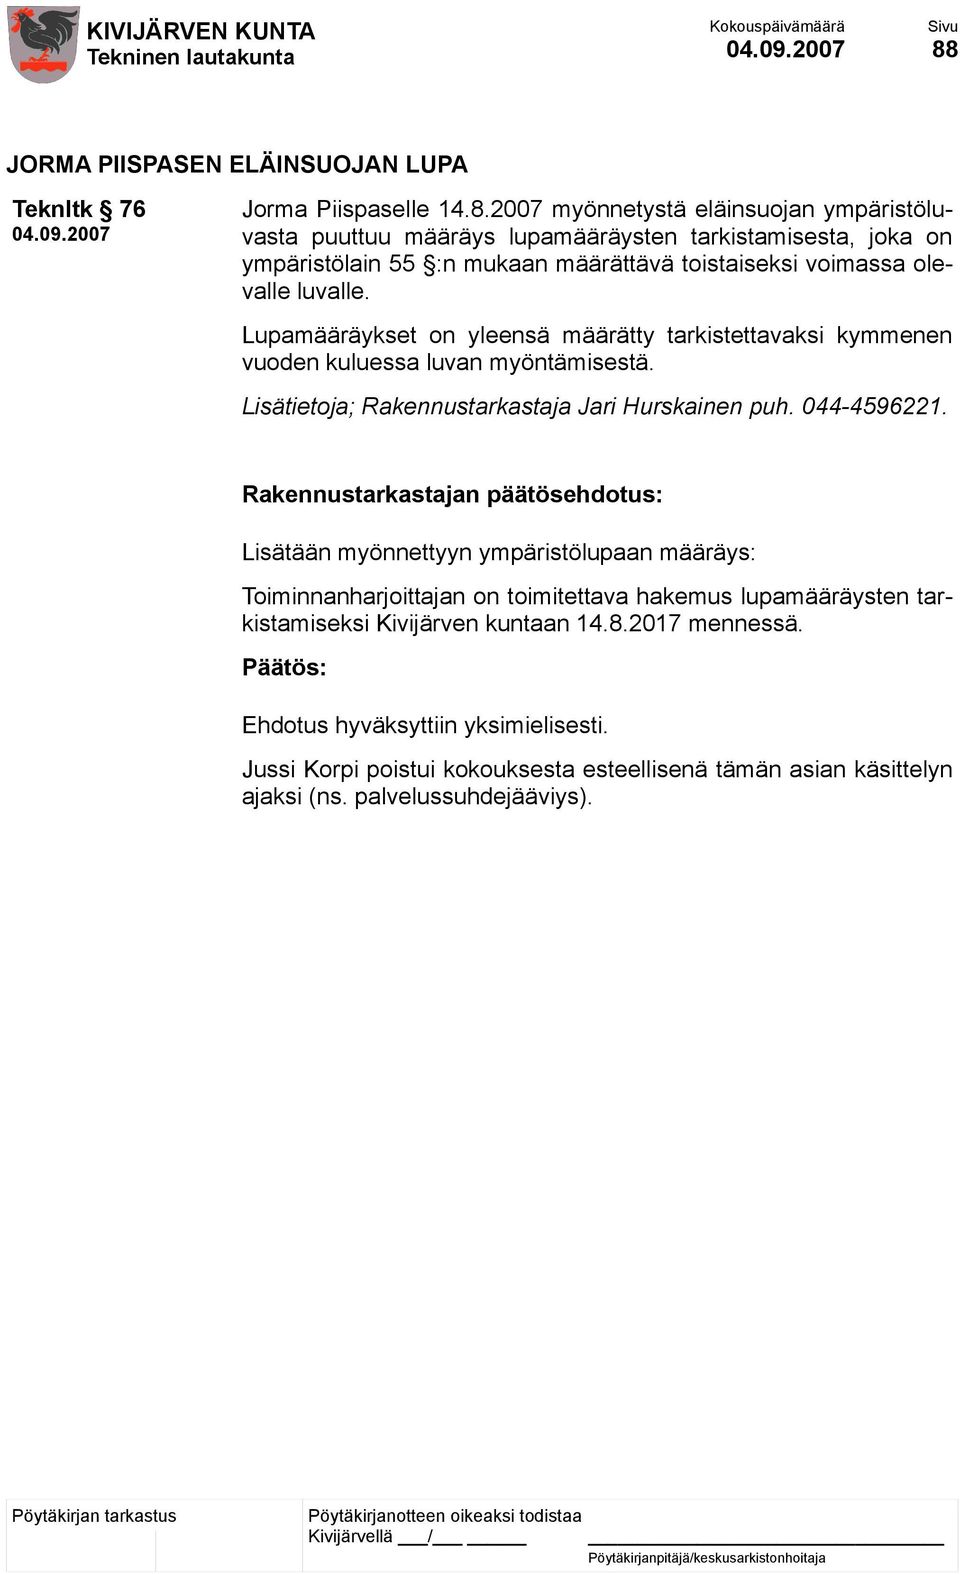 Rakennustarkastajan päätösehdotus: Lisätään myönnettyyn ympäristölupaan määräys: Toiminnanharjoittajan on toimitettava hakemus lupamääräysten tarkistamiseksi Kivijärven kuntaan 14.8.